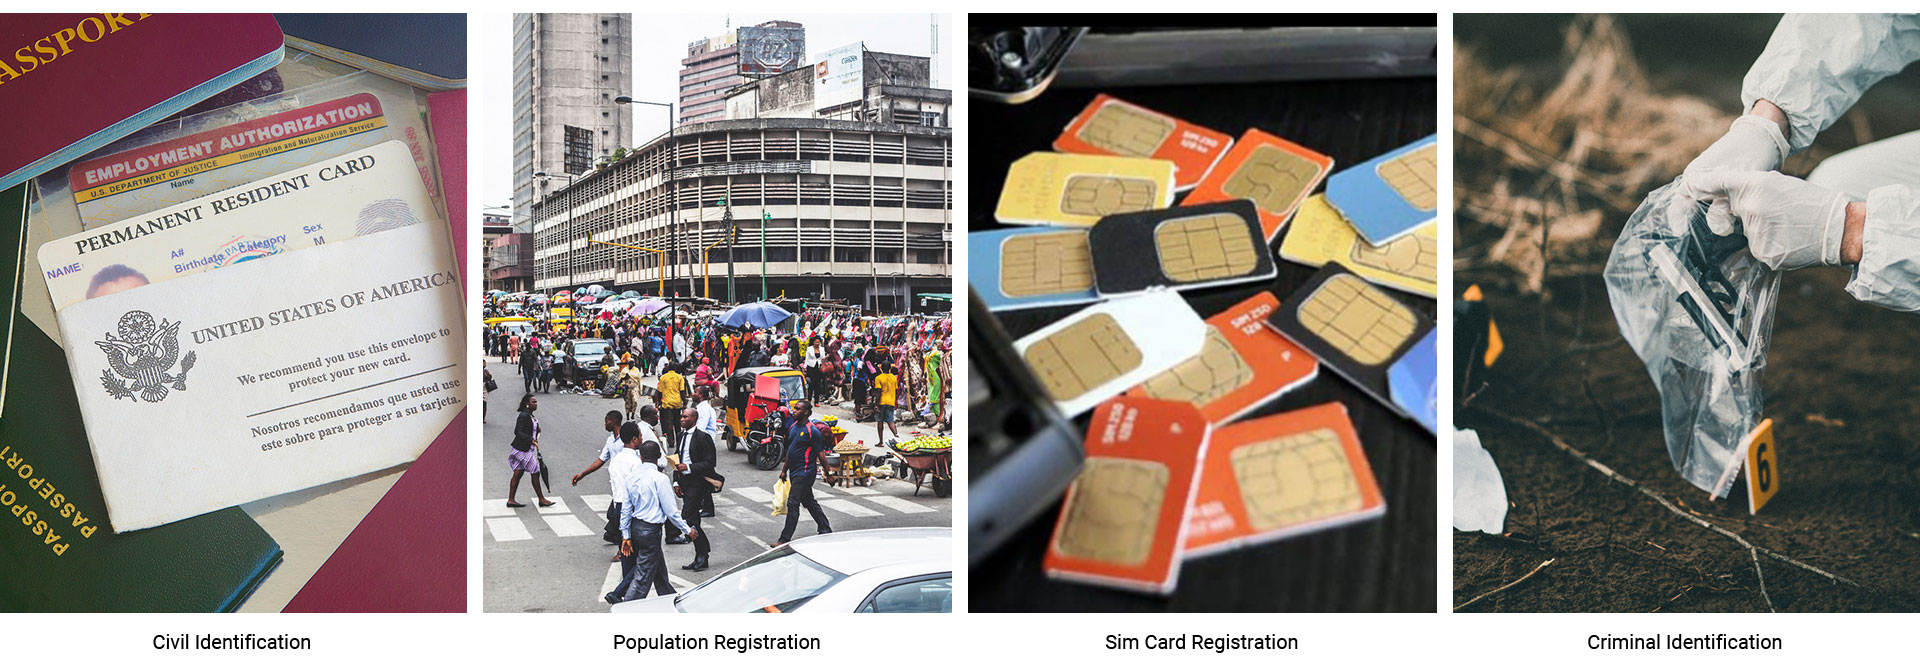 Sim Card Registration Solution,Civil Identification Fingerprint scanner device, National Population Registration validator